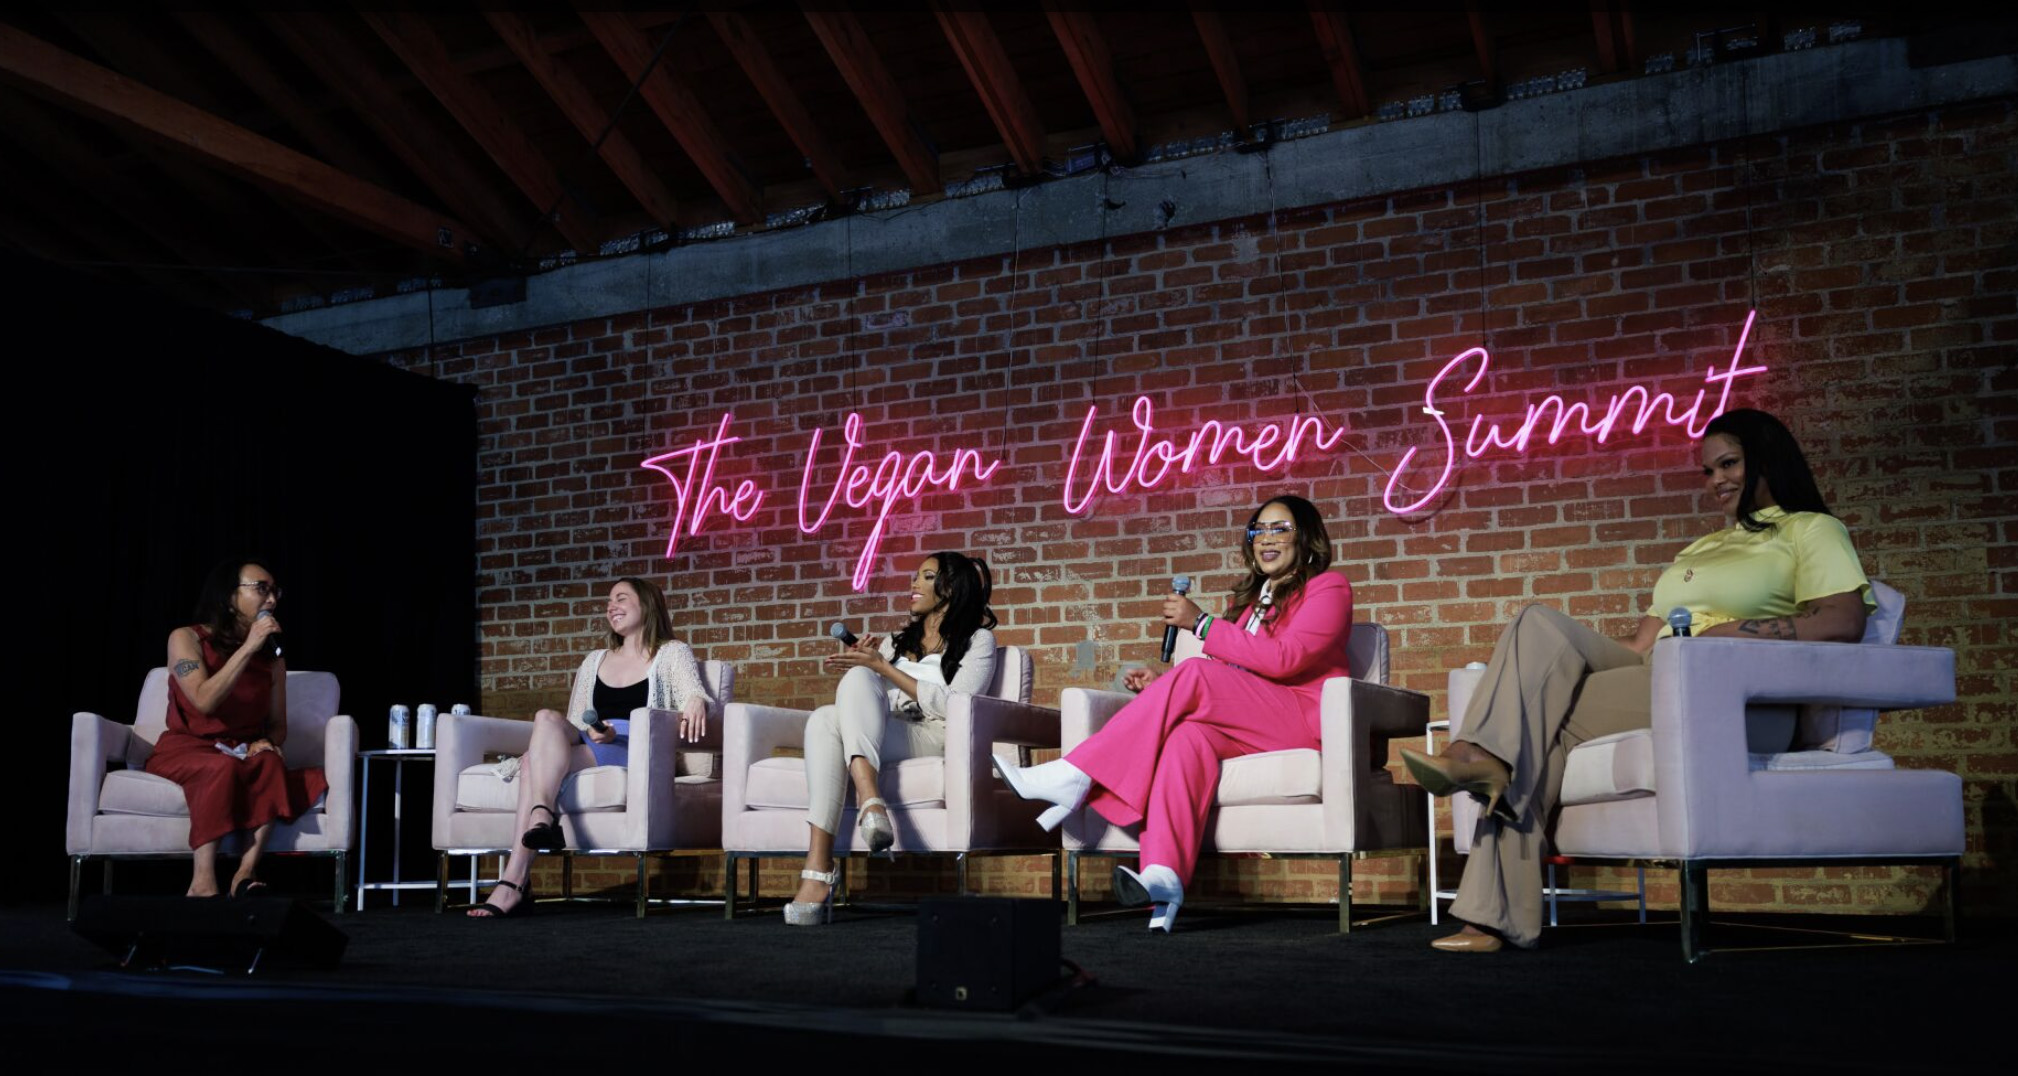 Women speaking at Vegan Women Summit